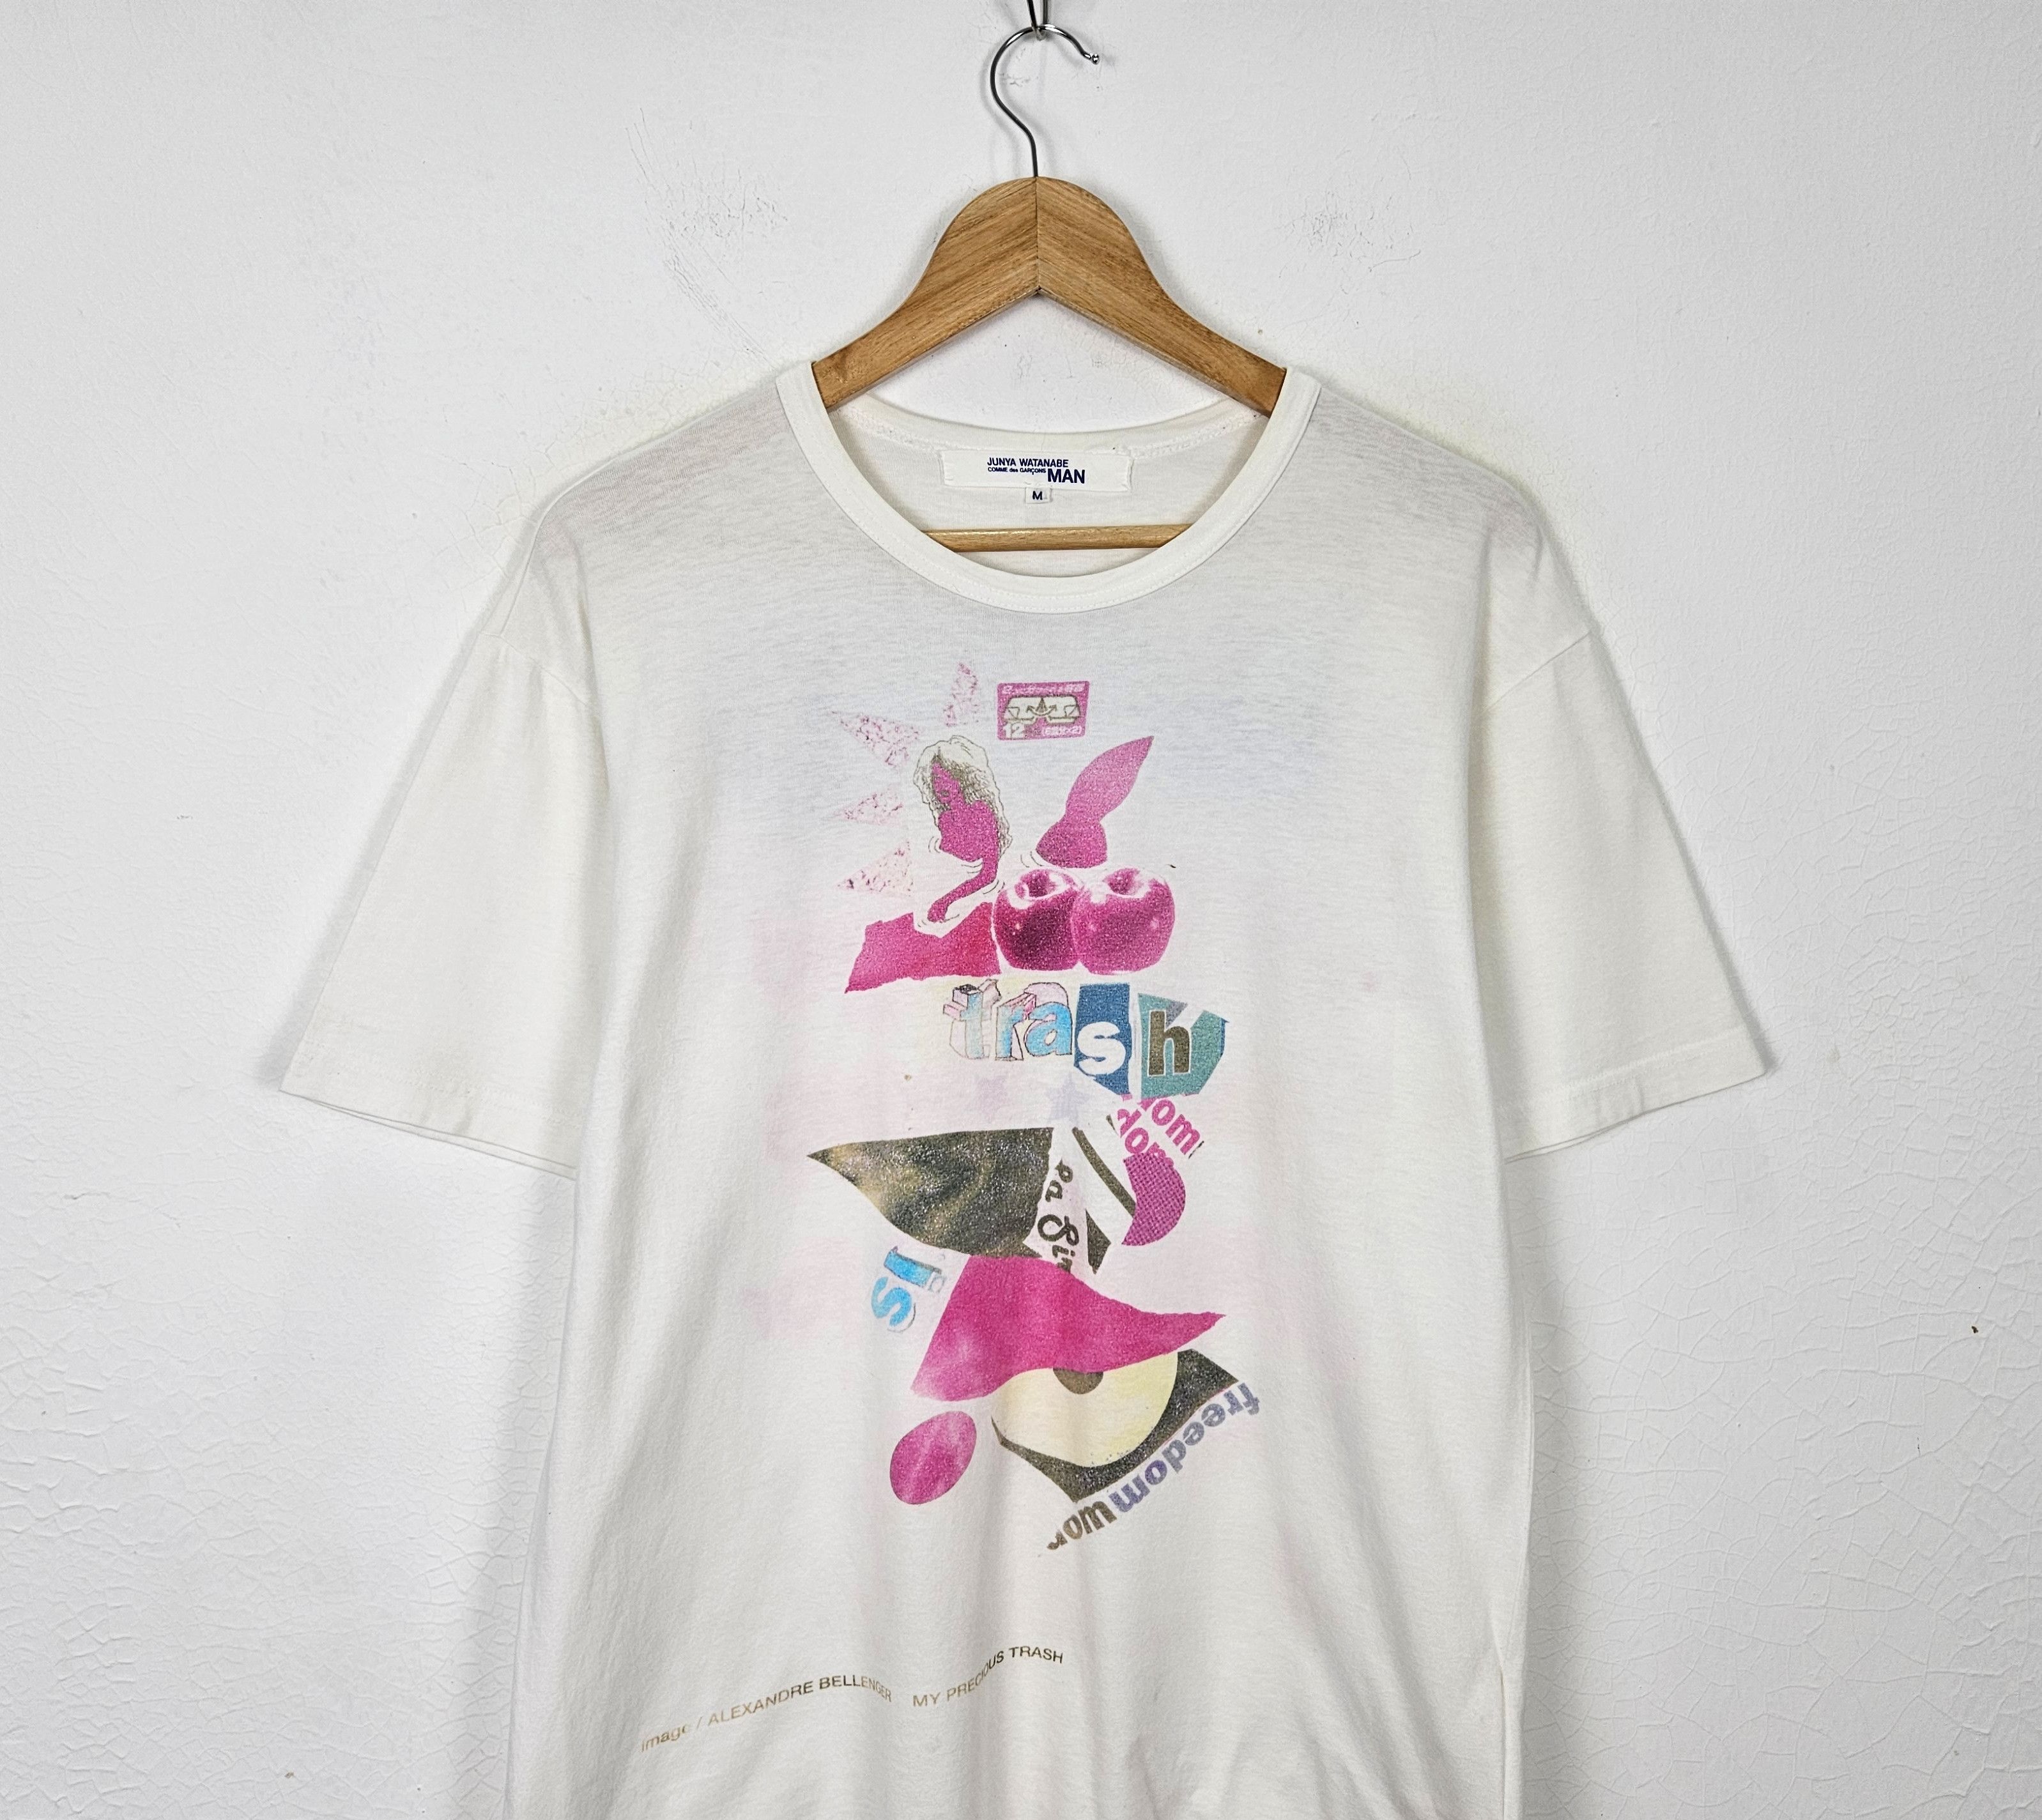 Comme des Garcons Junya Watanabe Dazed & Confused shirt - 3